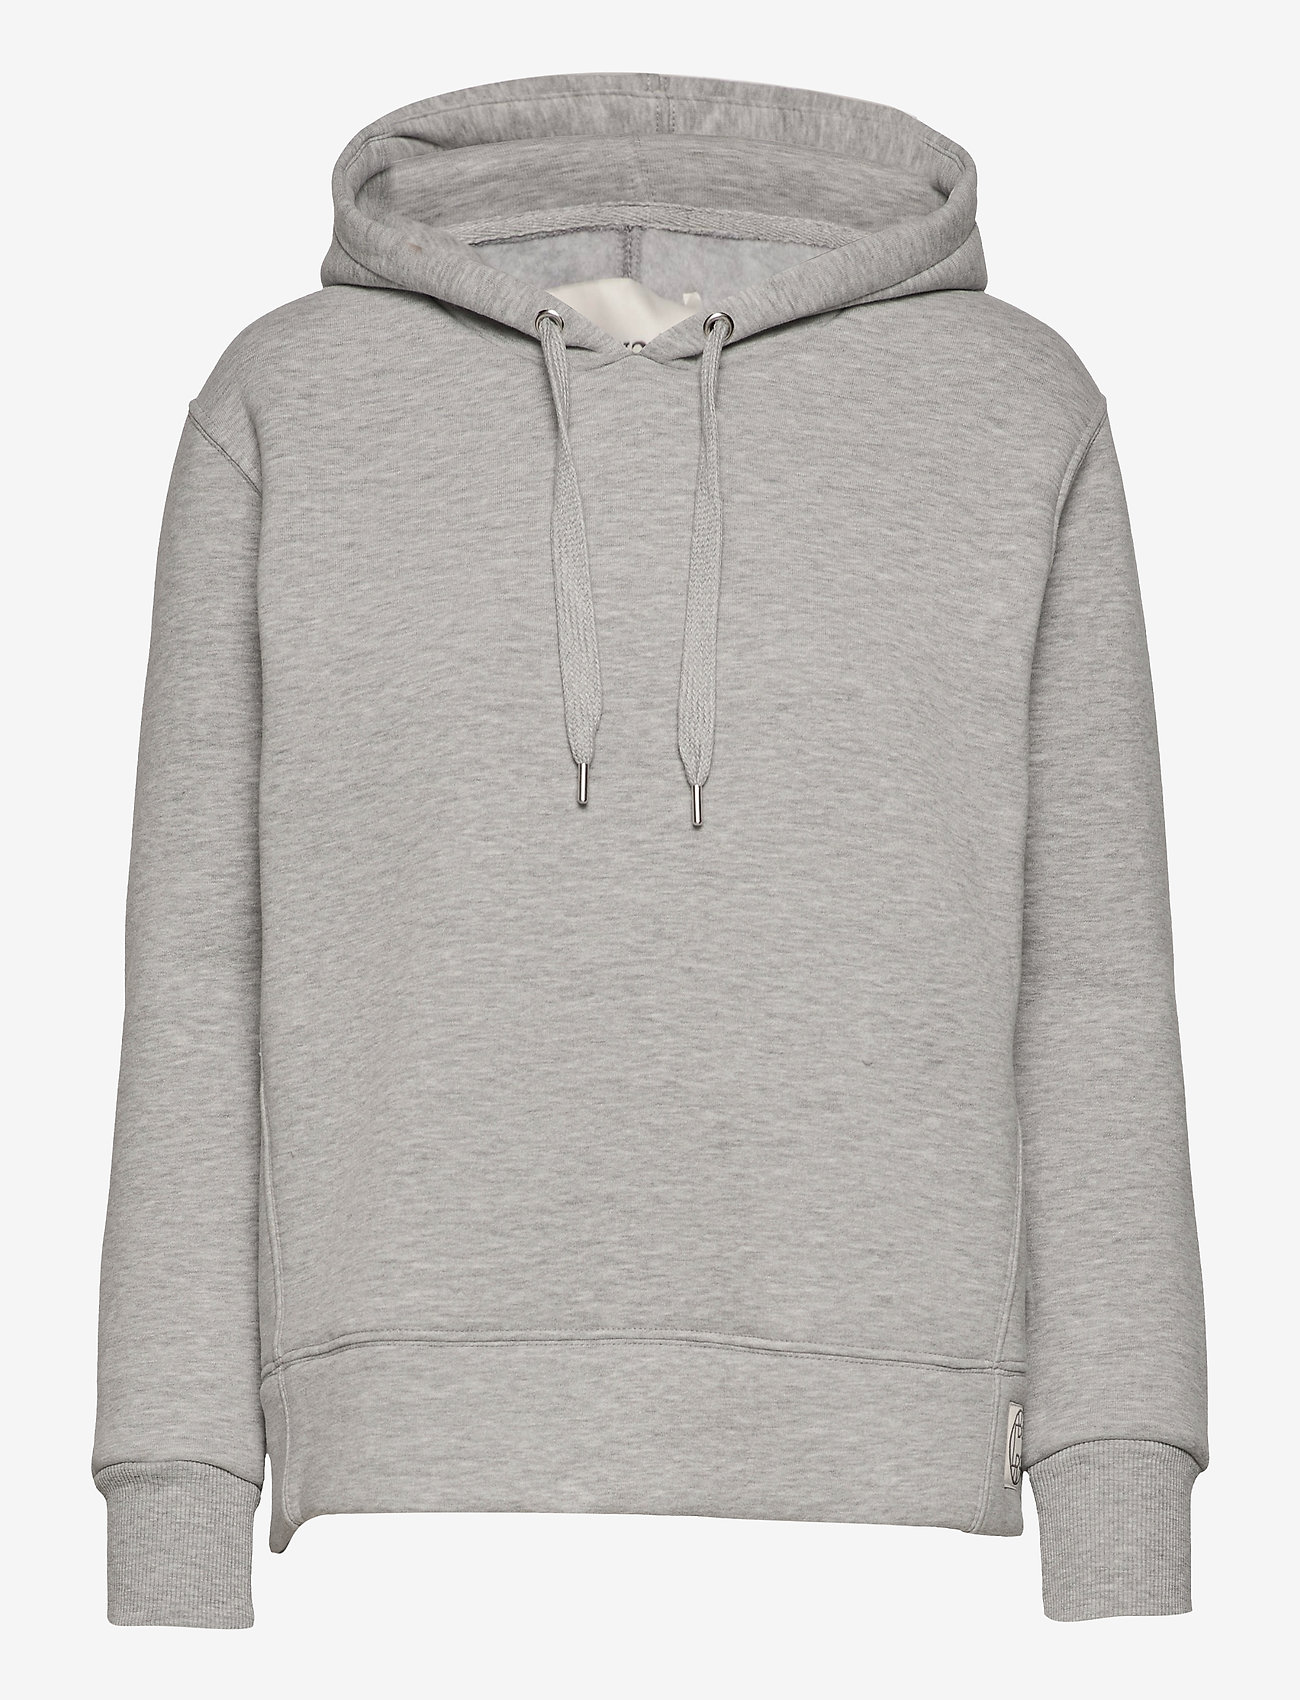 Levete Room - LR-NUKA - sweatshirts & hoodies - l9950 - light grey melange - 0